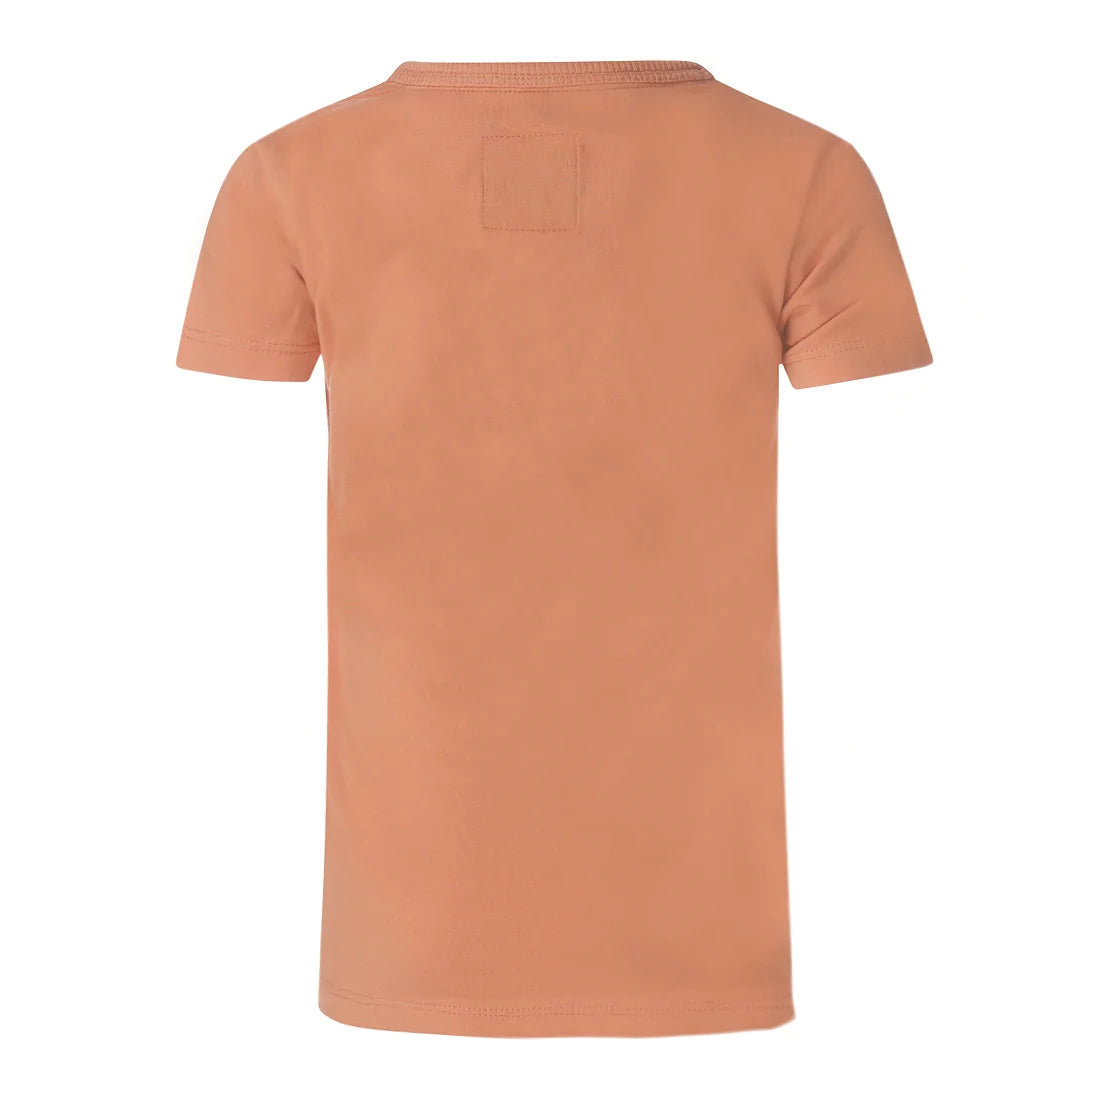 Jongens T-shirt ss van Koko Noko in de kleur Faded orange in maat 128.